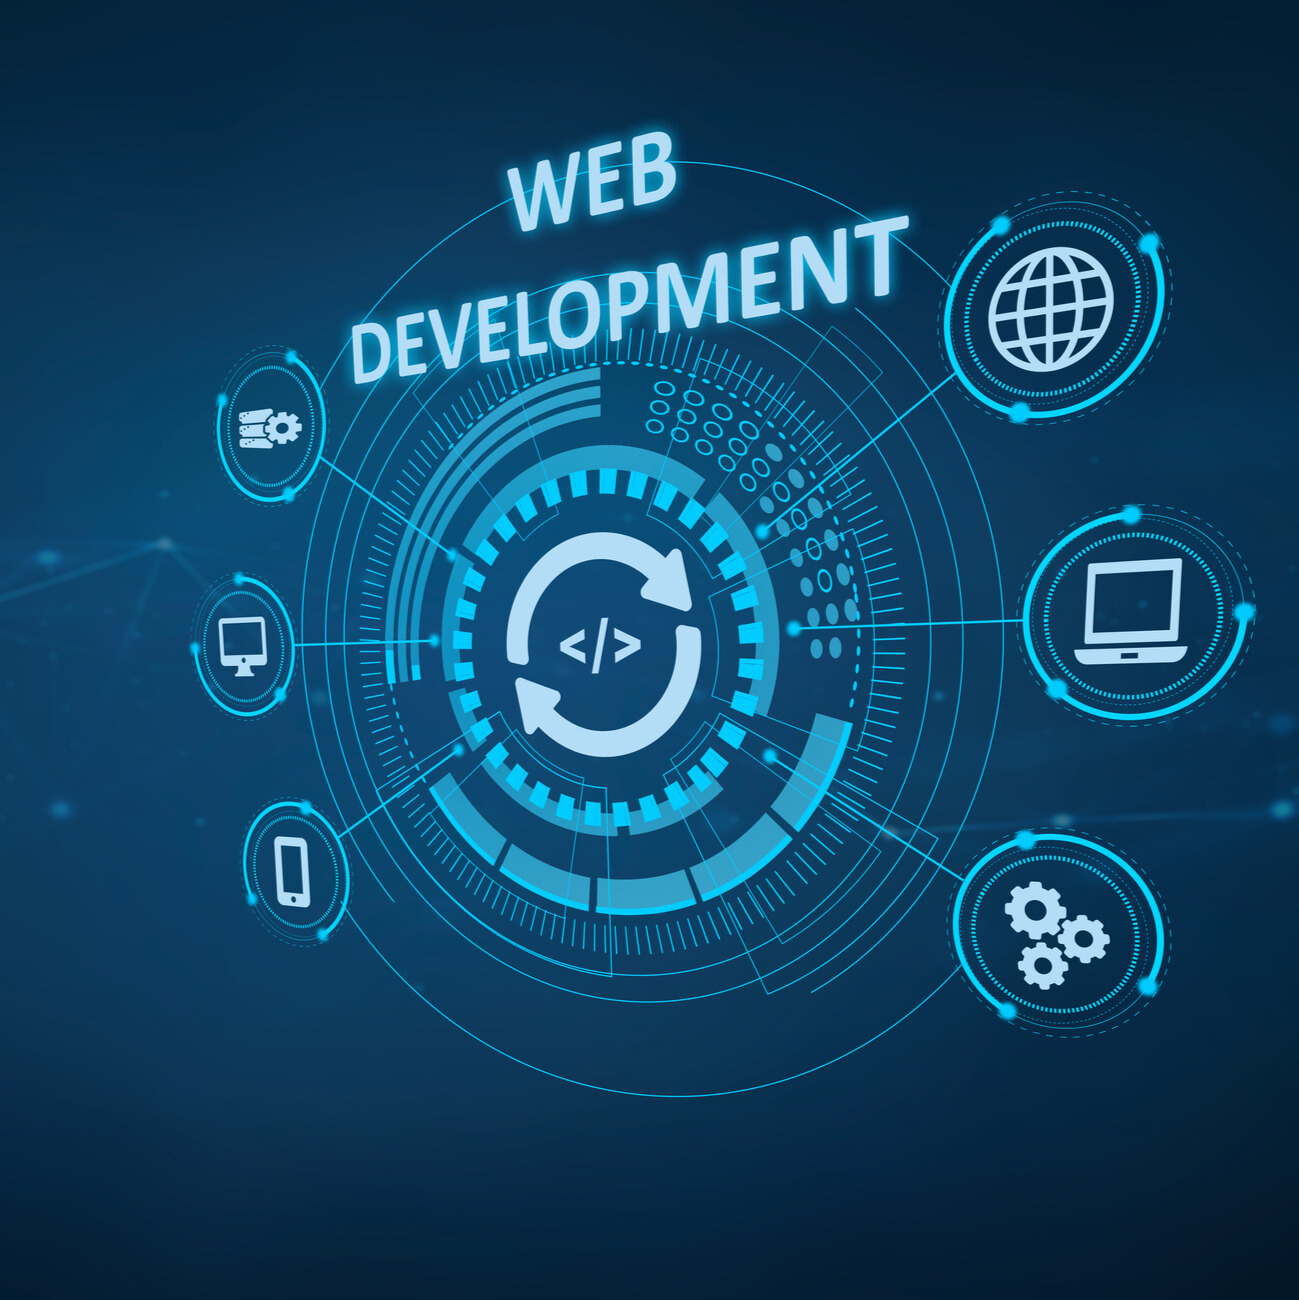 content management system web development icons